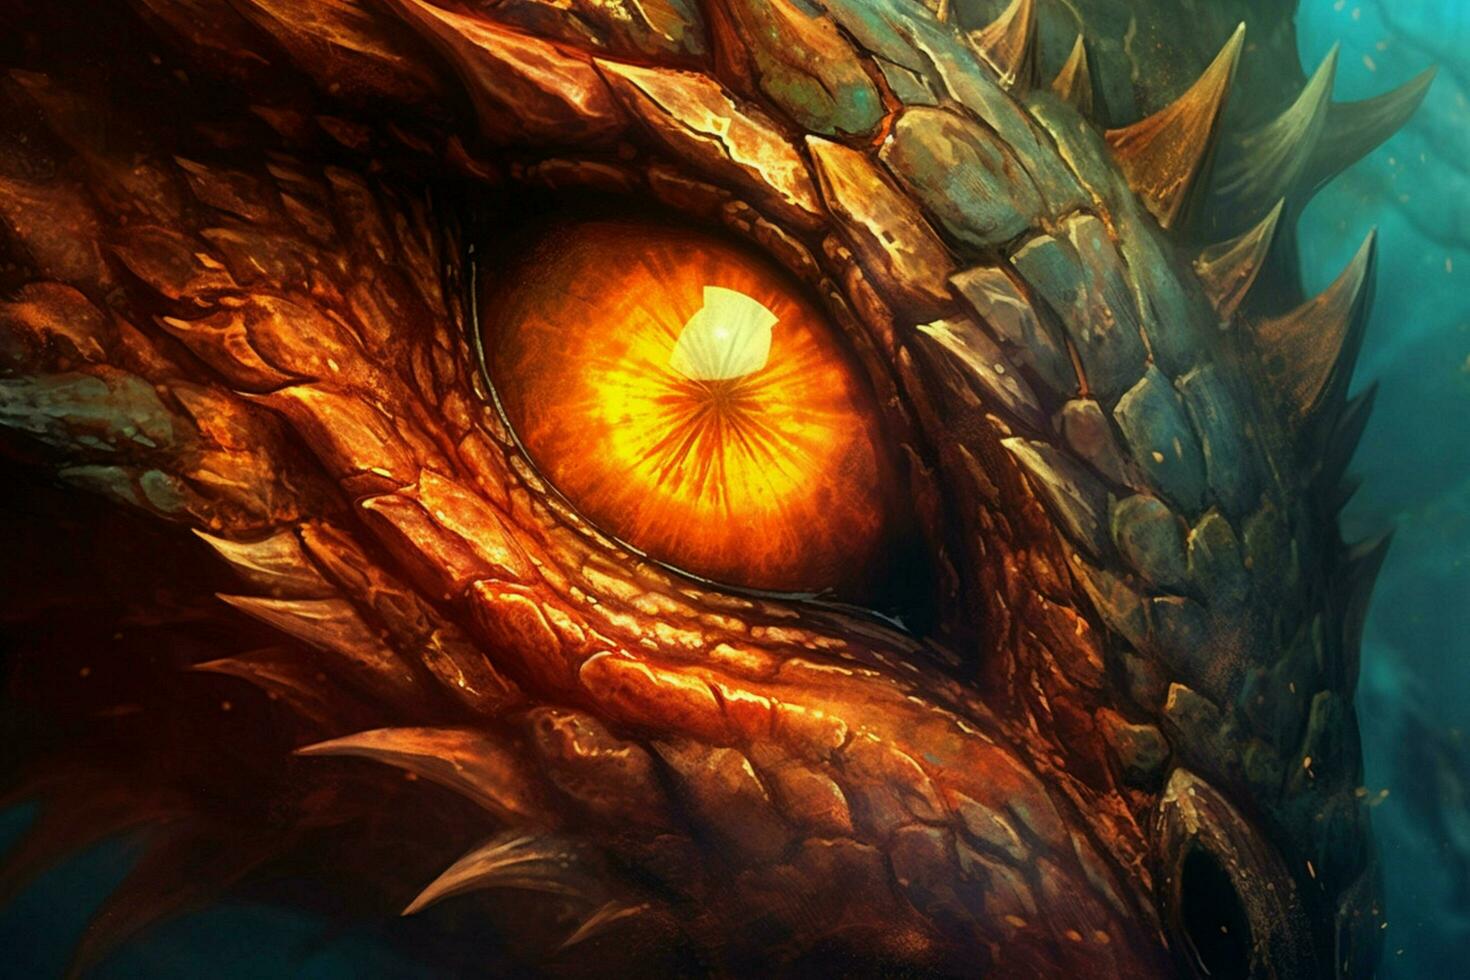 eye of mythological dragon on fire photo